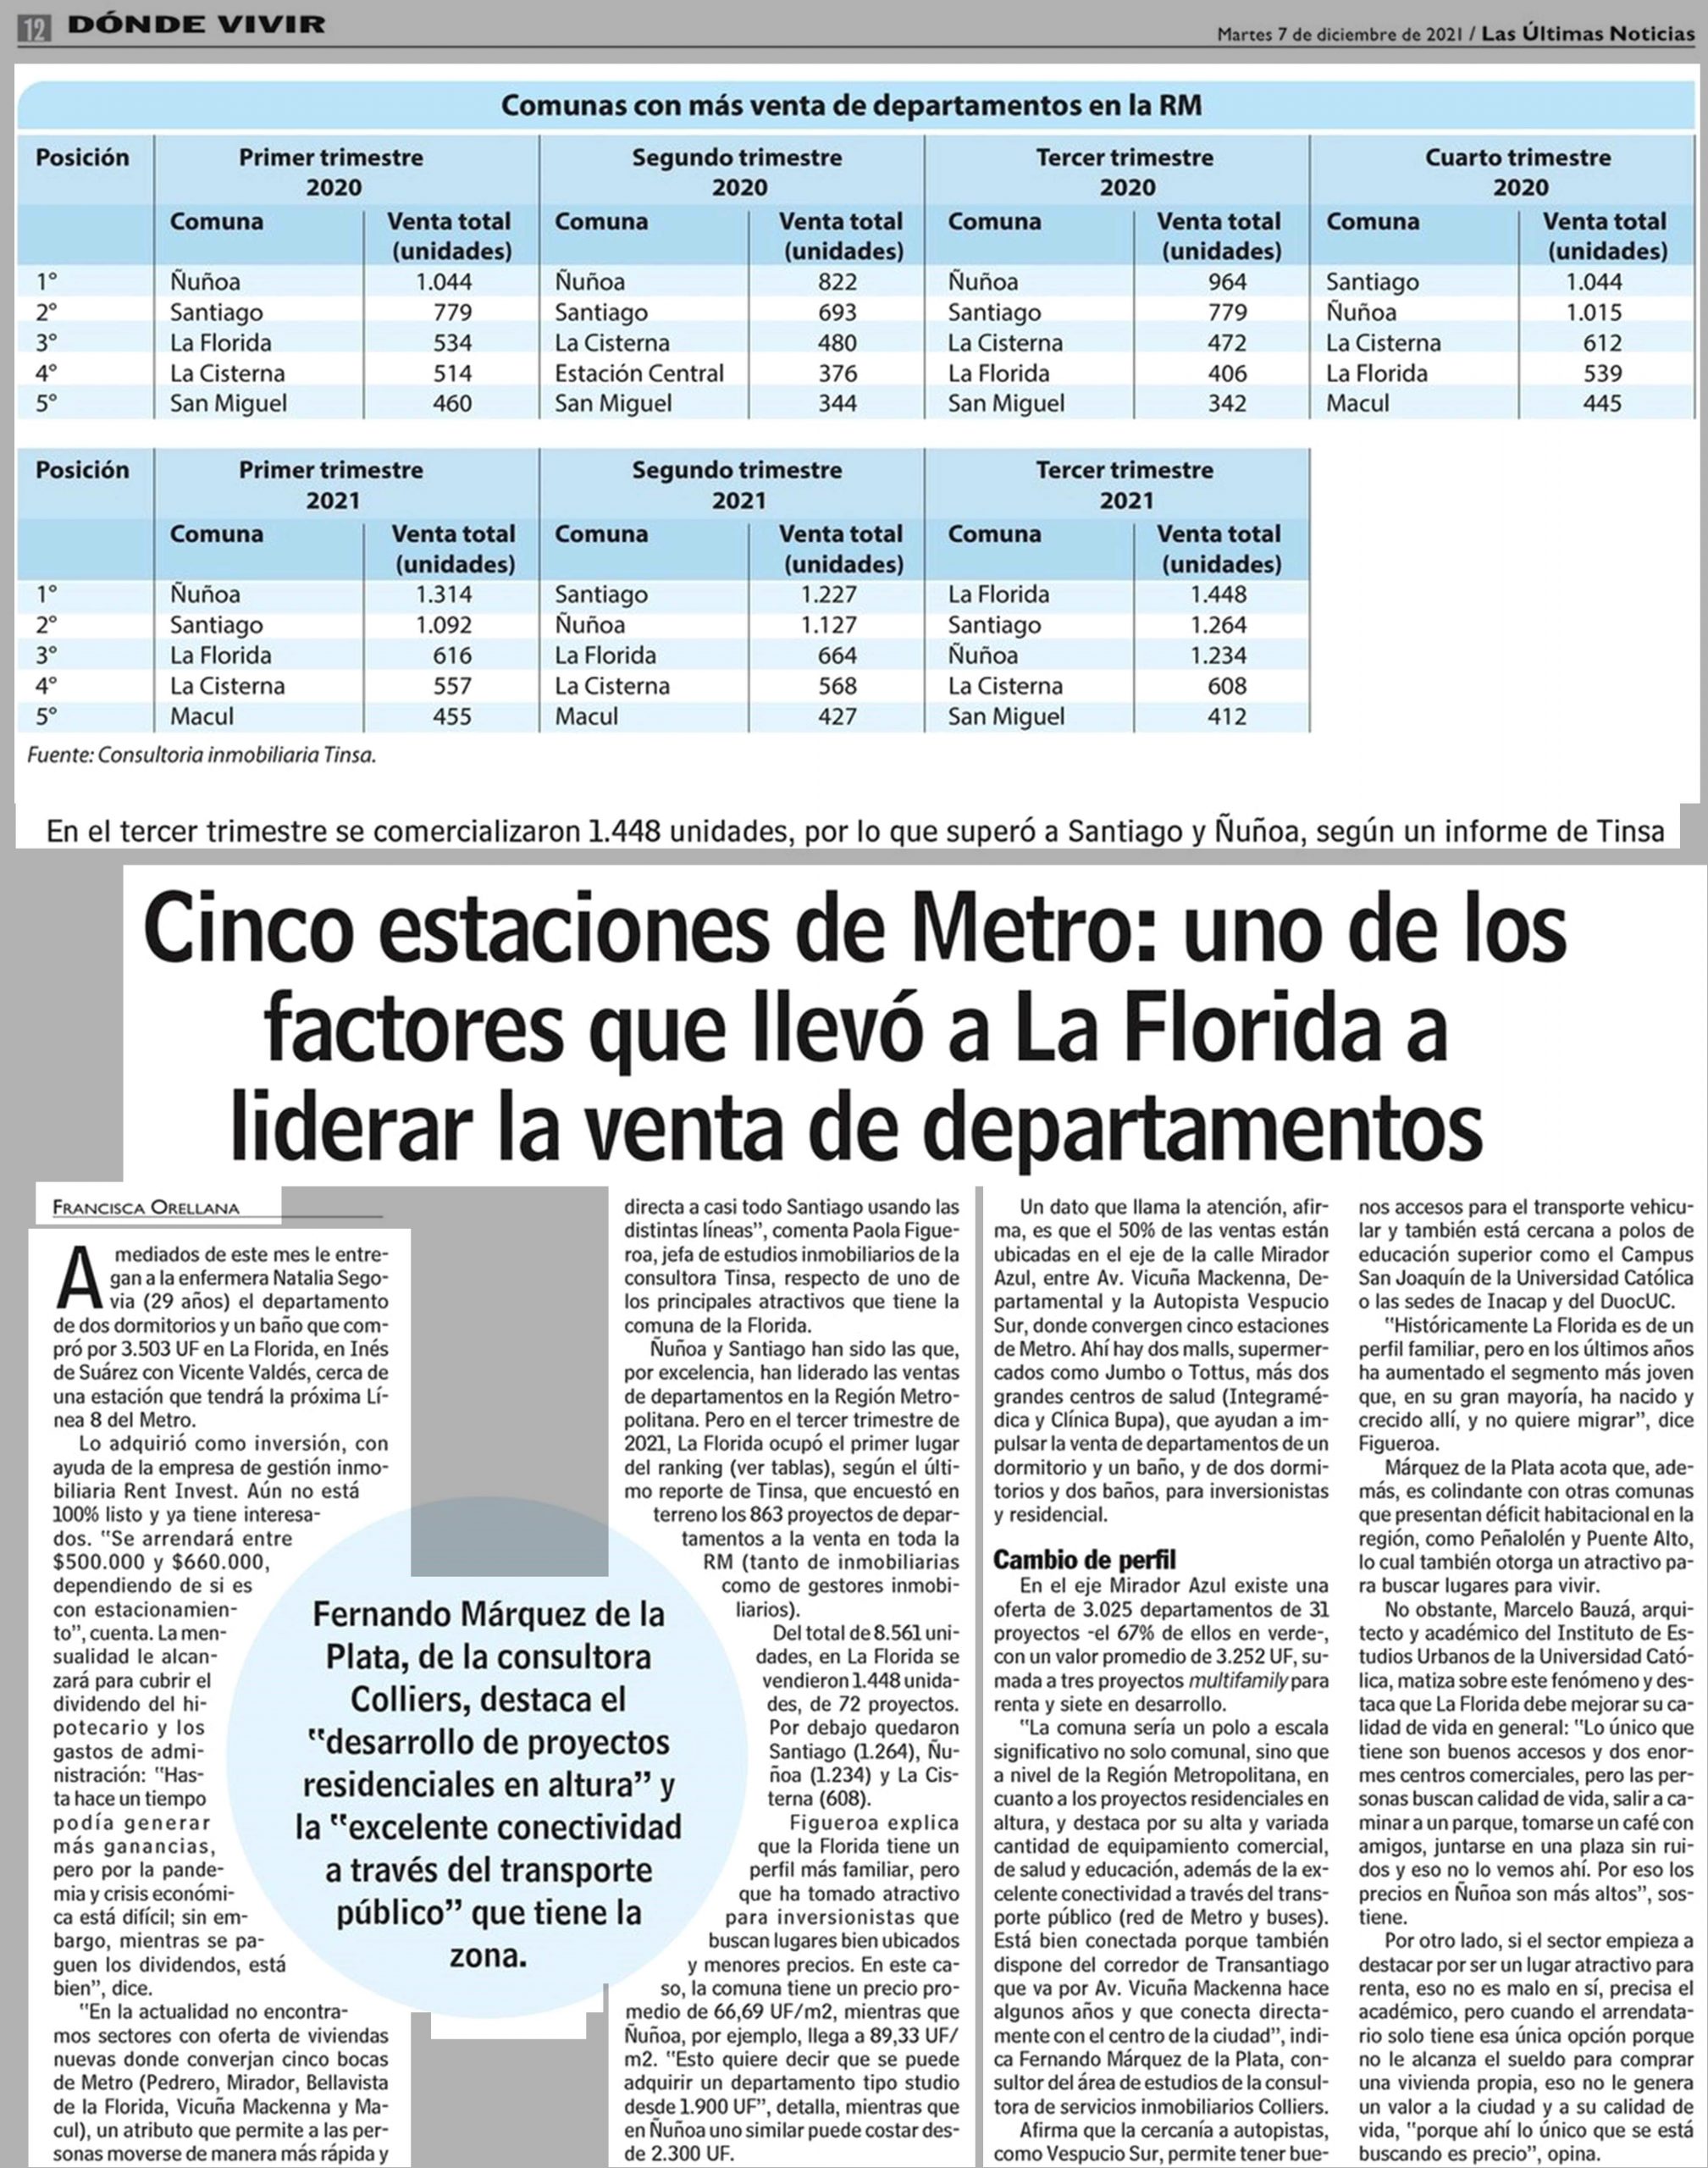 (LUN) Cinco estaciones de Metro: uno de los factores que llevó a La Florida a liderar la venta de departamentos